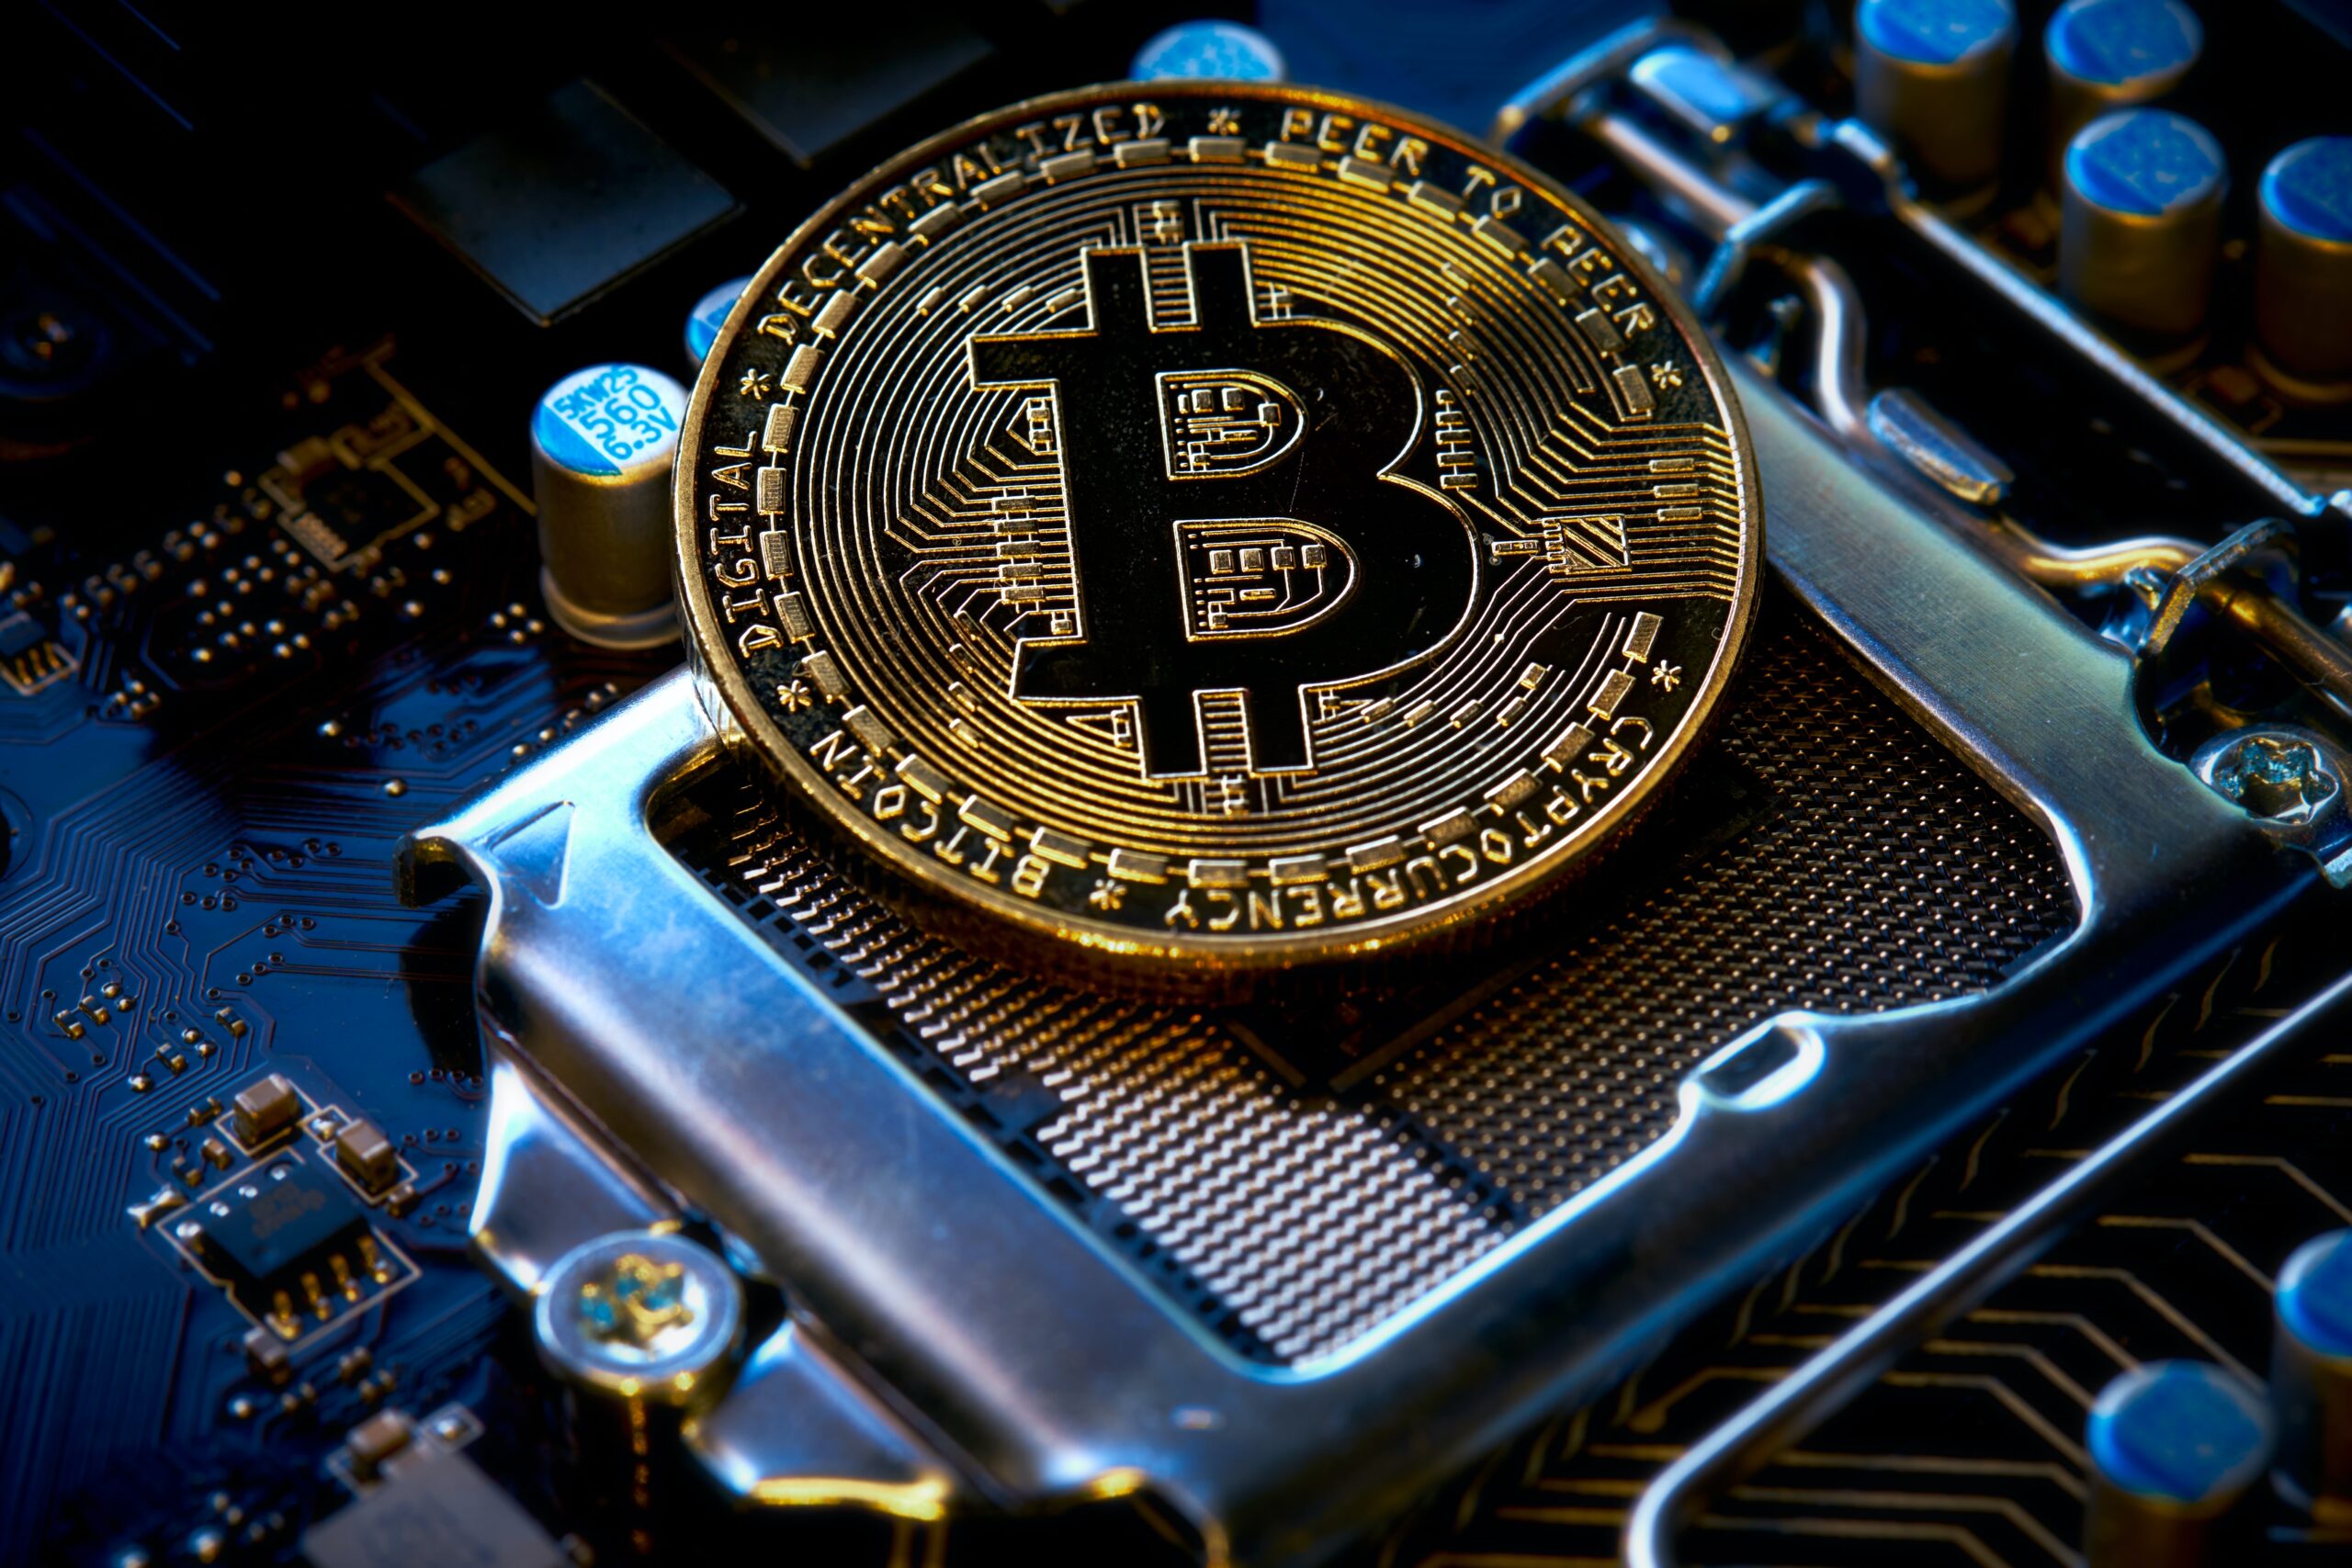 Los mineros de Bitcoin muestran una fuerte acumulación a medida que aumentan sus inventarios